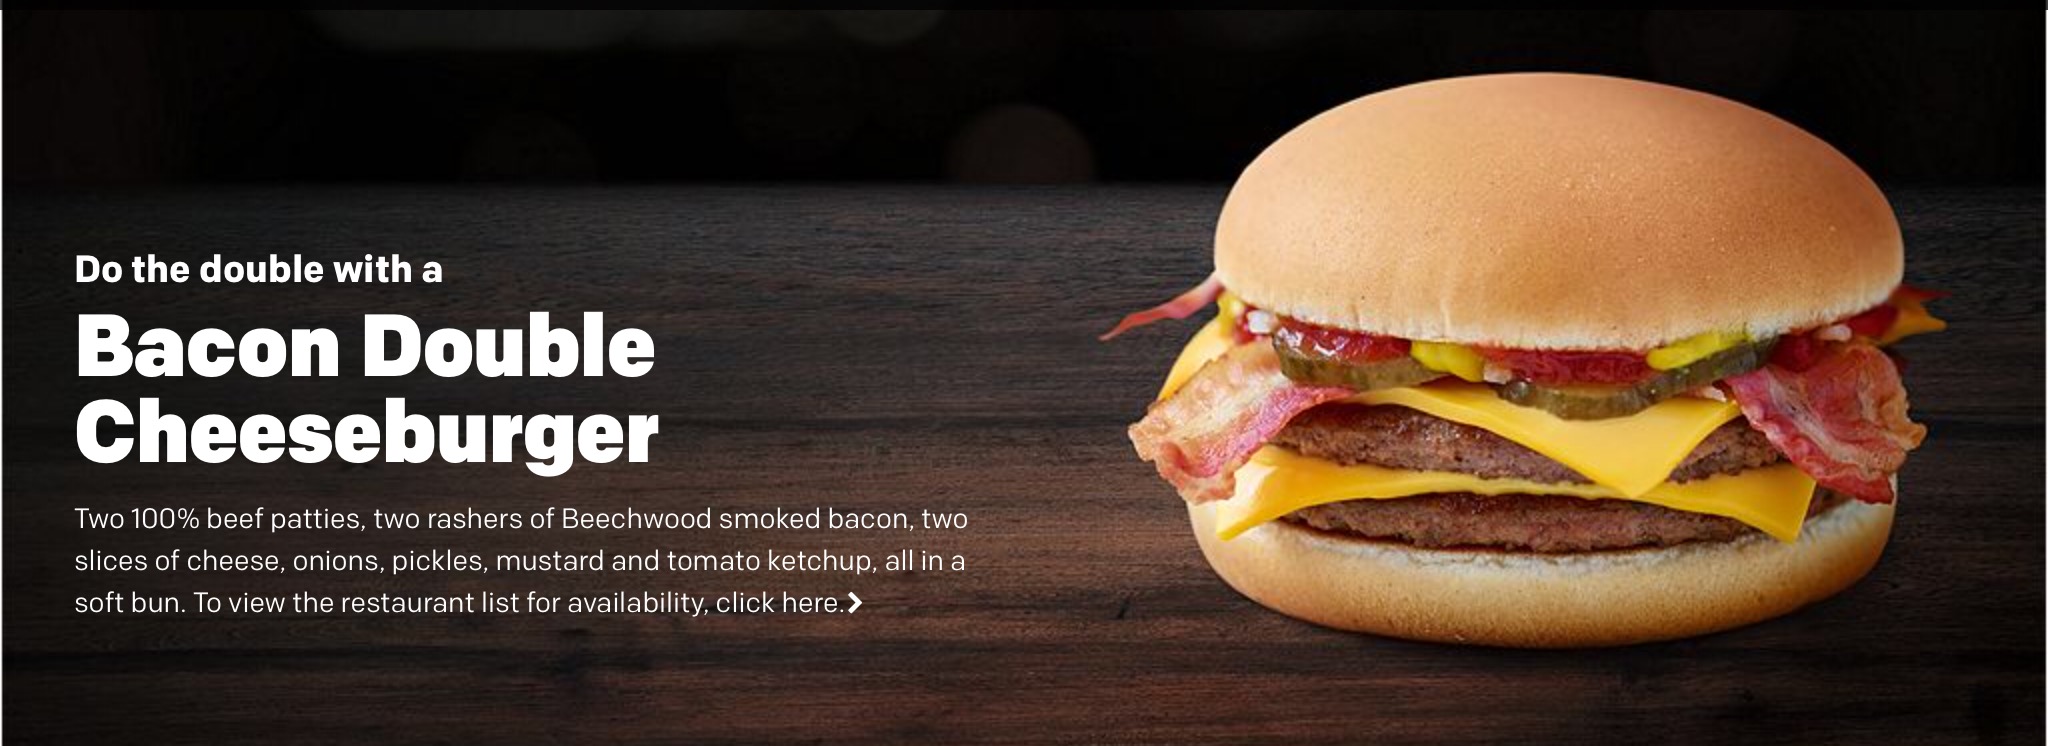 McDonald’s Bacon Double Cheeseburger